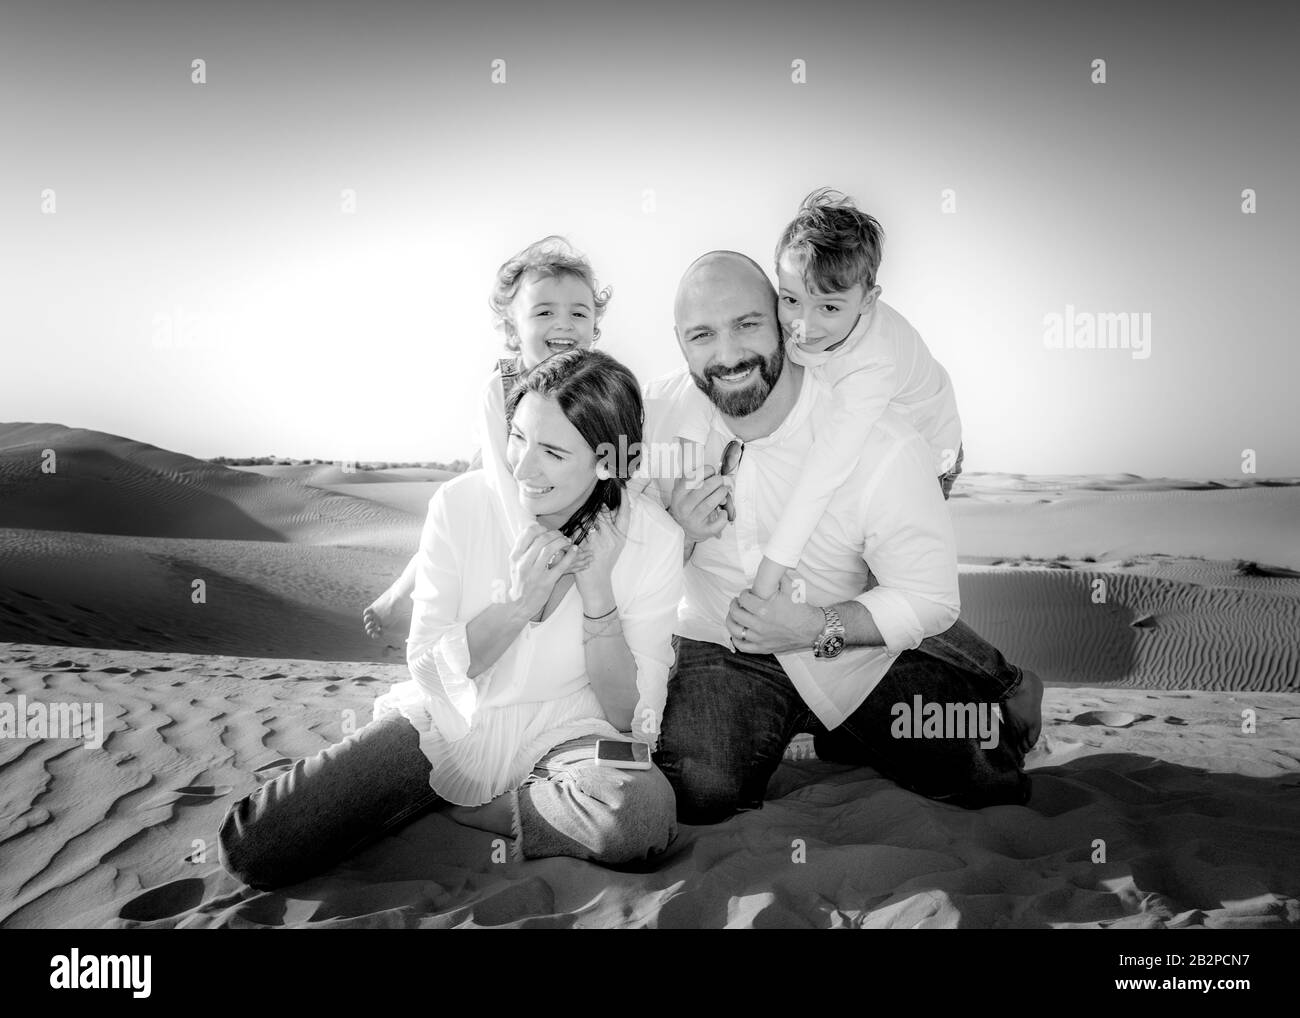 Familiengruppenporträt, Spaß zusammen, in einer Wüste Einstellung mit Sanddünen im Hintergrund, Dubai, Stockfoto